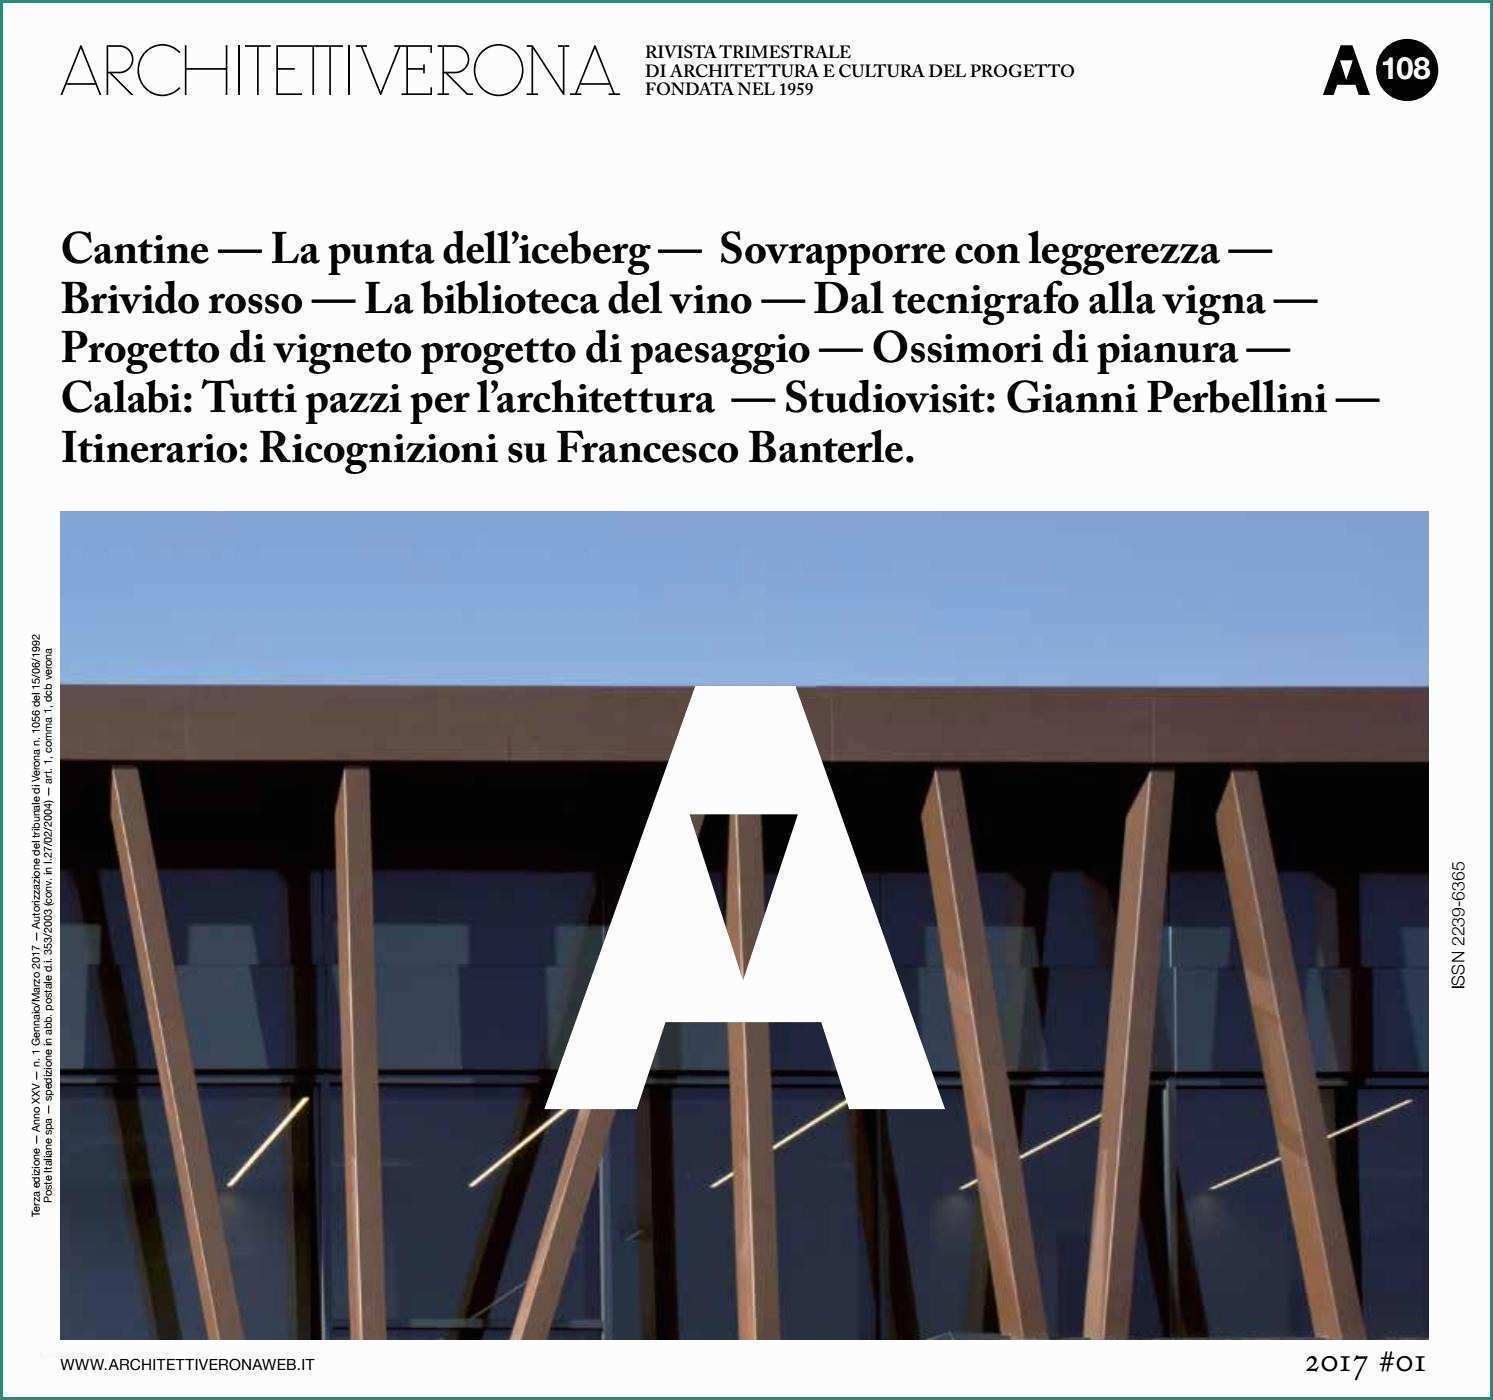 Montacarichi Da Cantiere Usati E Architettiverona 108 by Architettiverona issuu